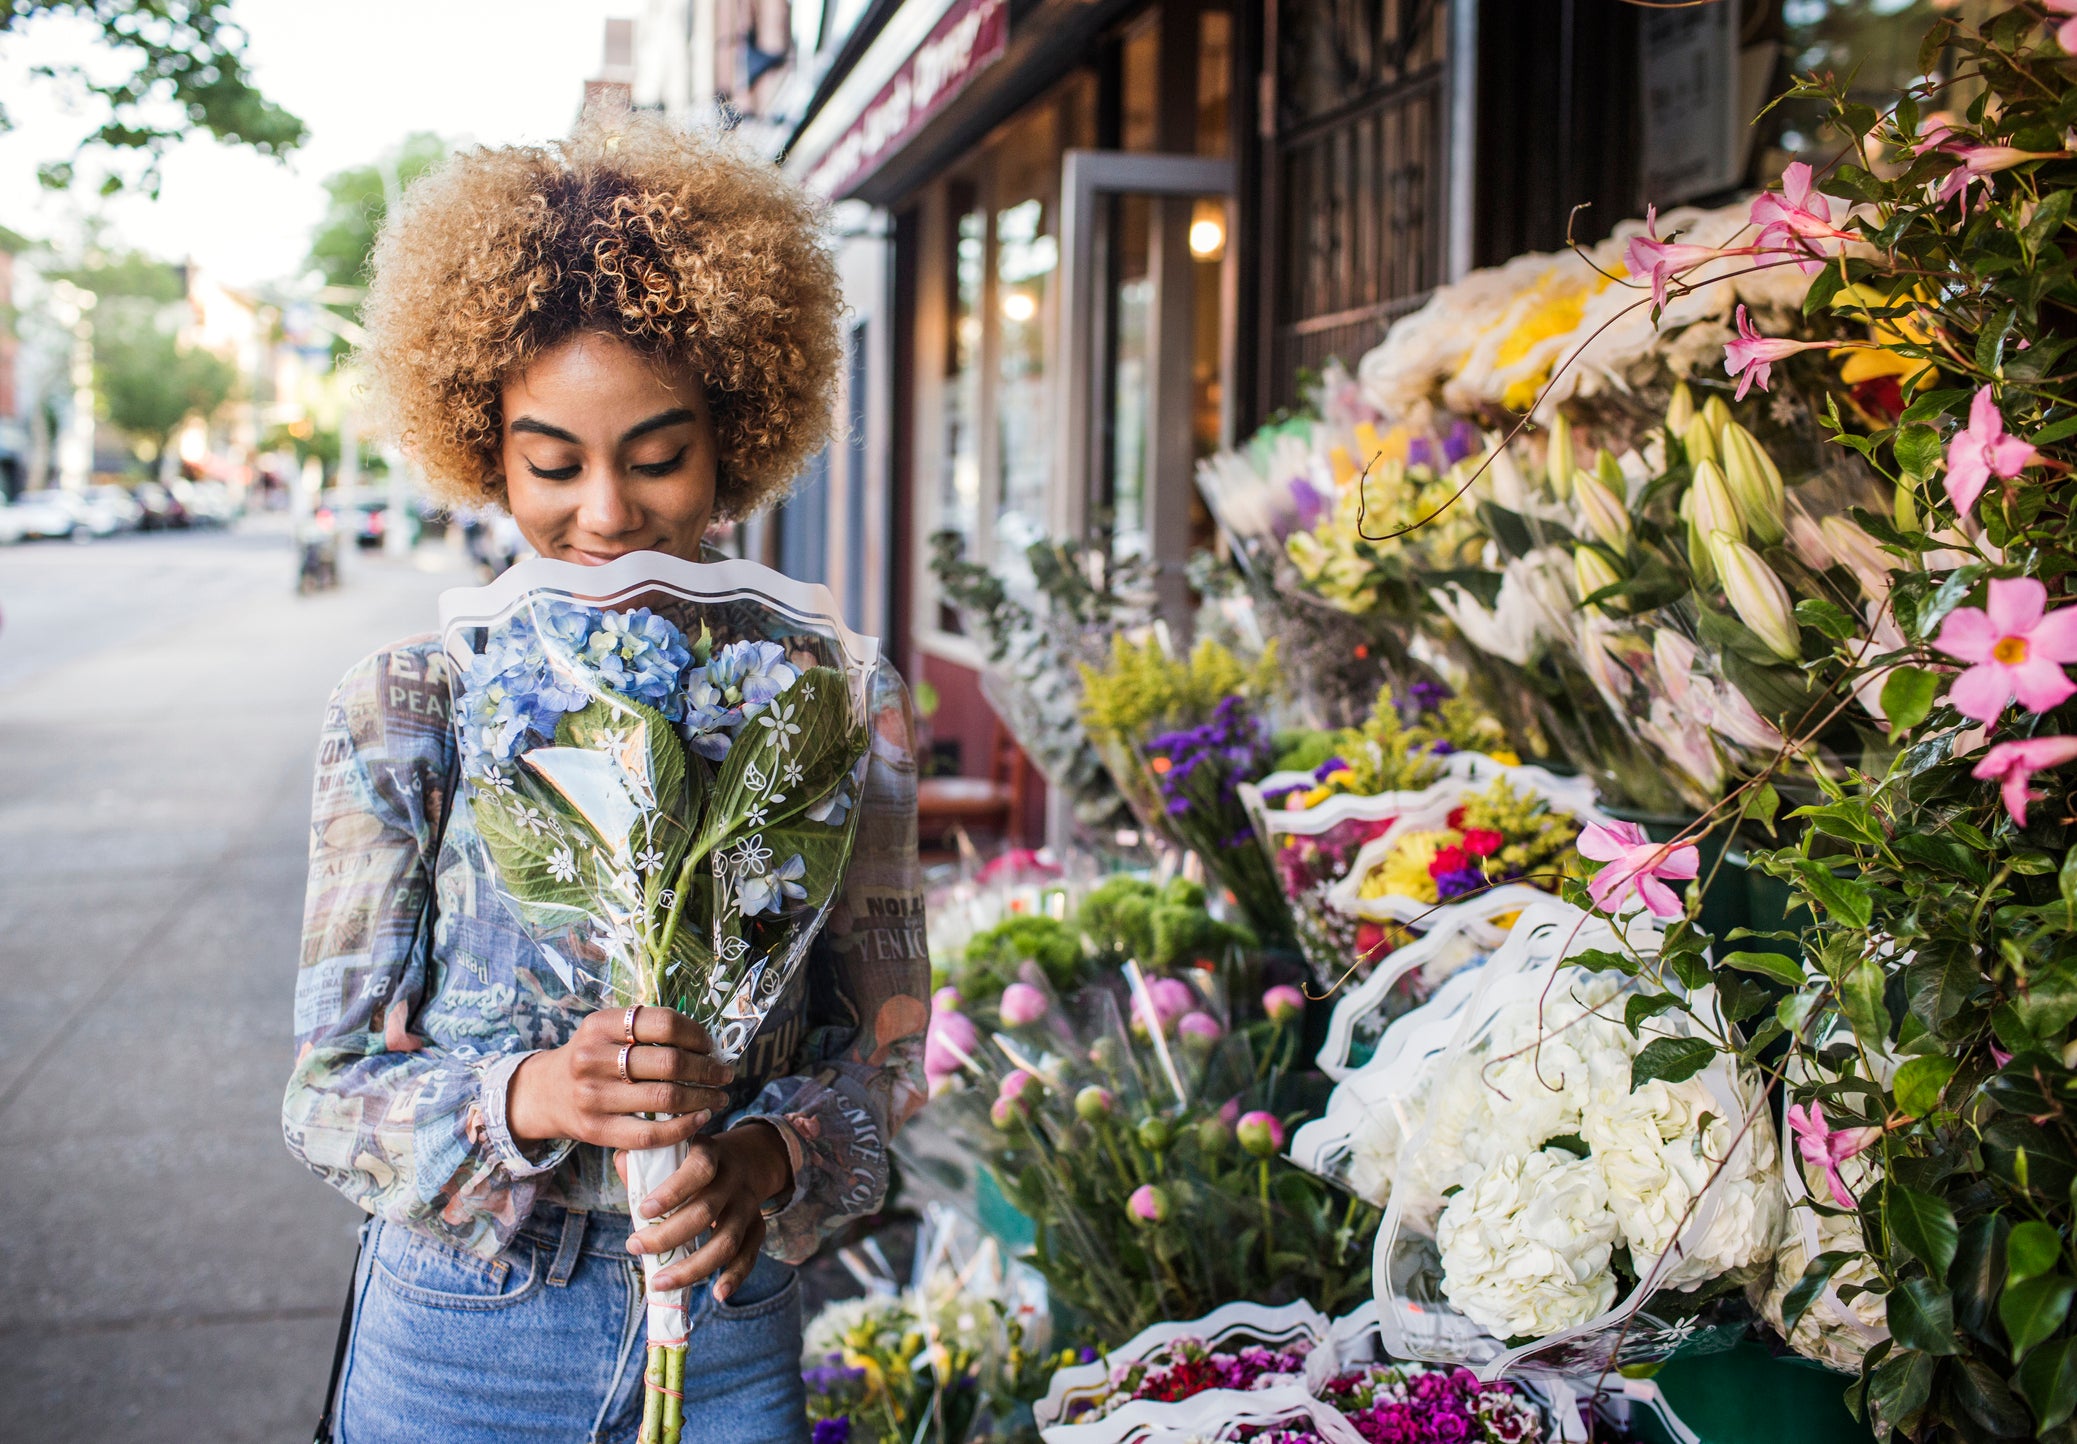 Smiling woman smelling hydrangeas outside flower shop